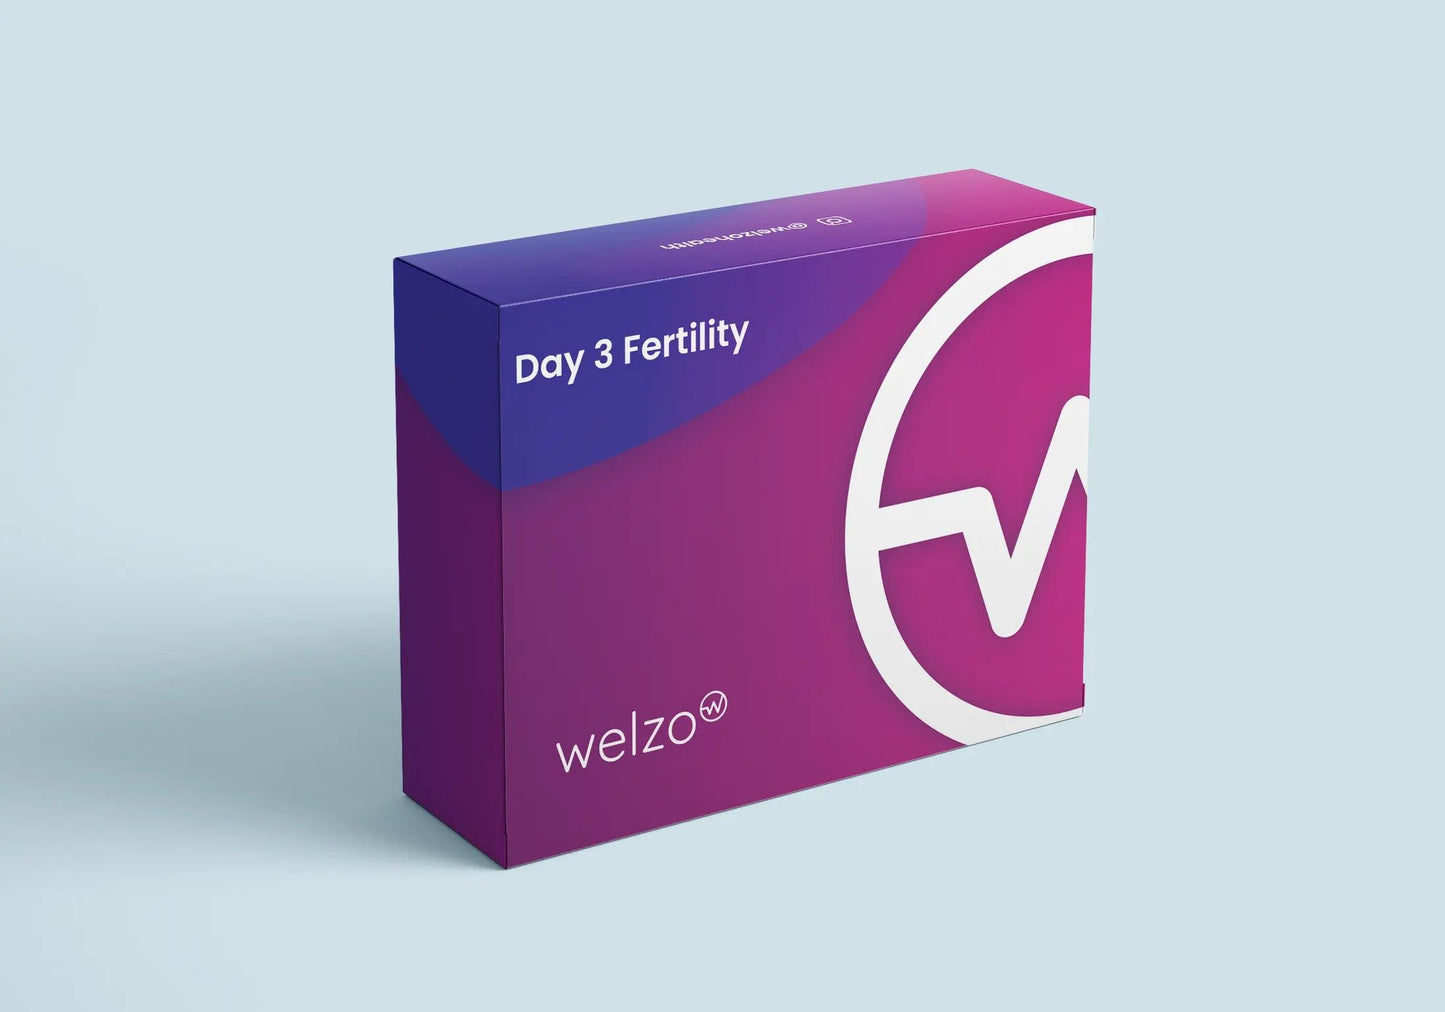 Day 3 Fertility Blood Test - welzo